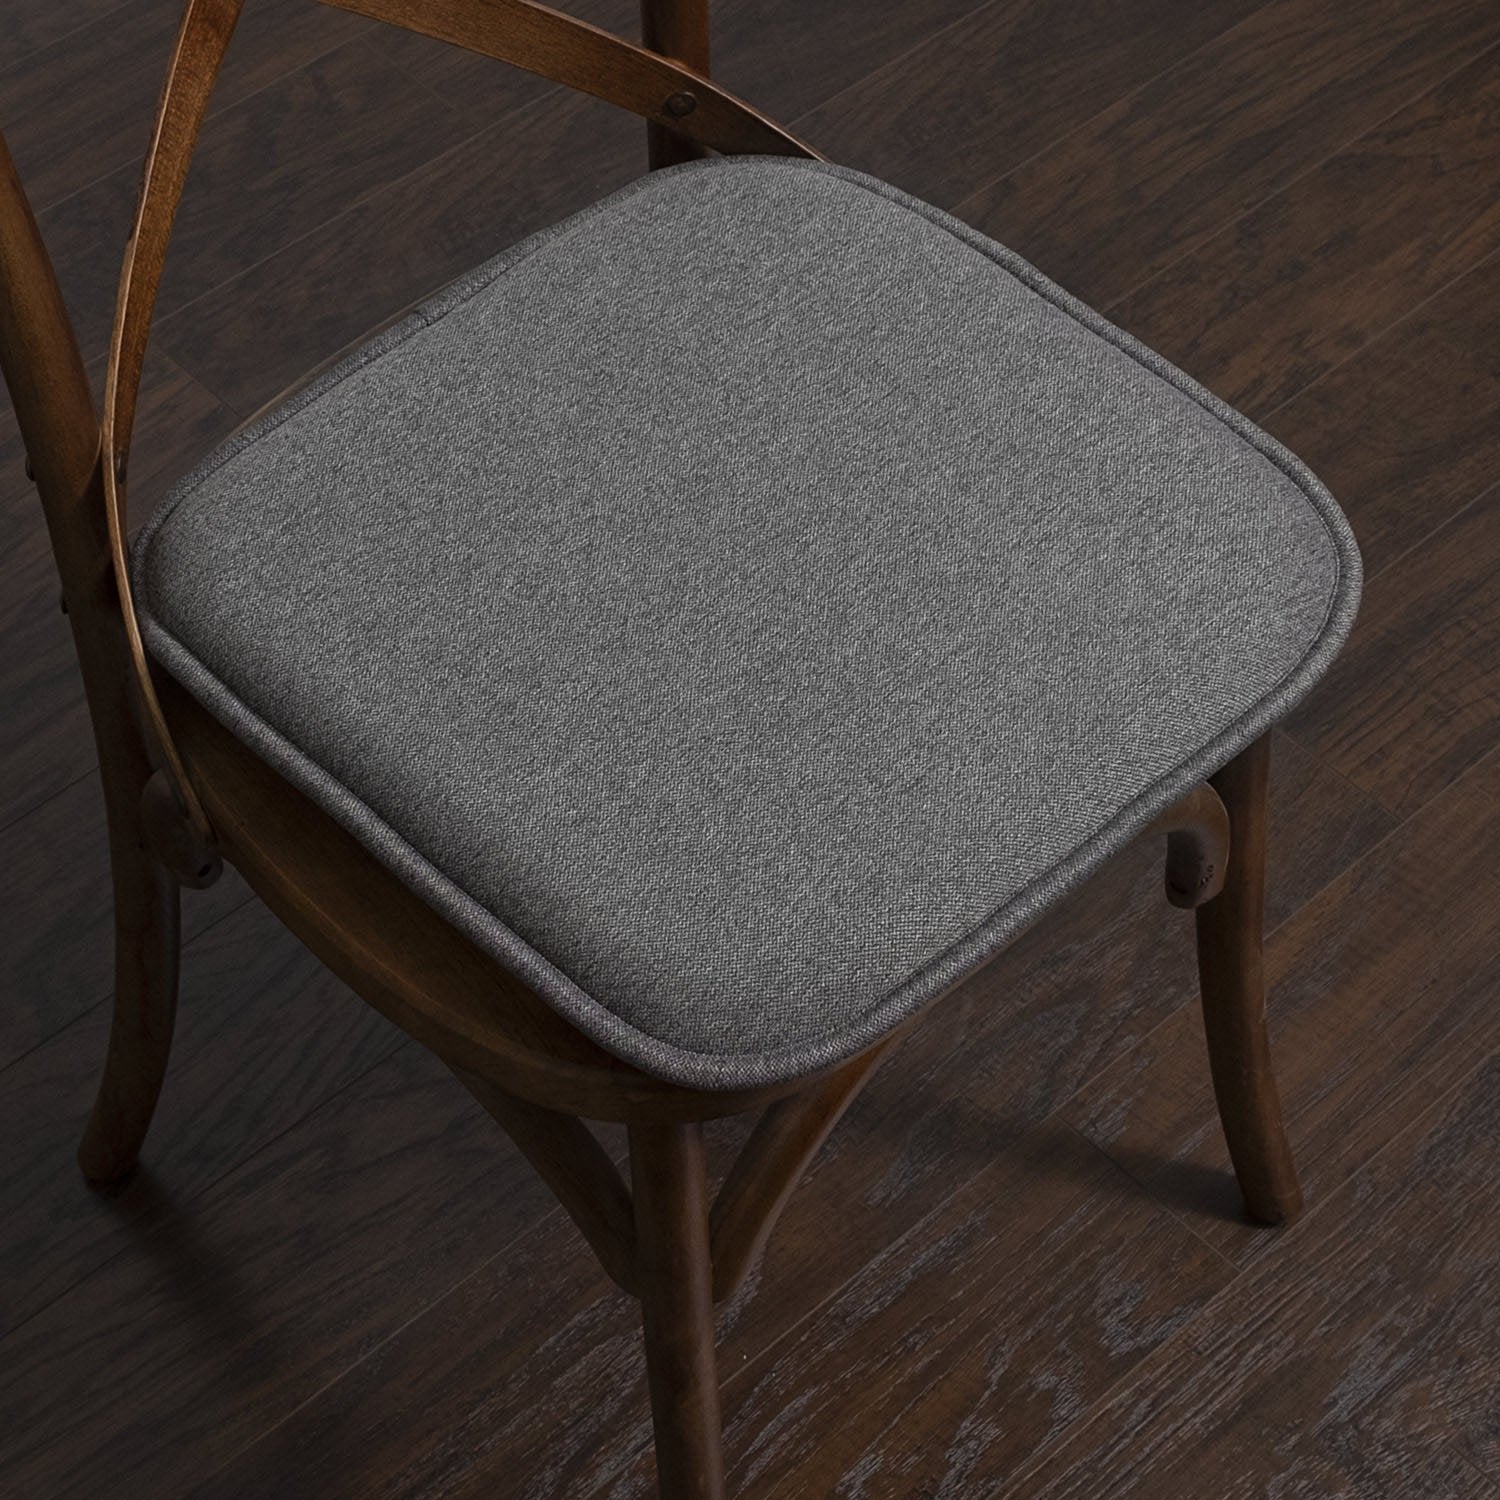 Charlotte Jacquard Chair Cushion Set Gray - Chair